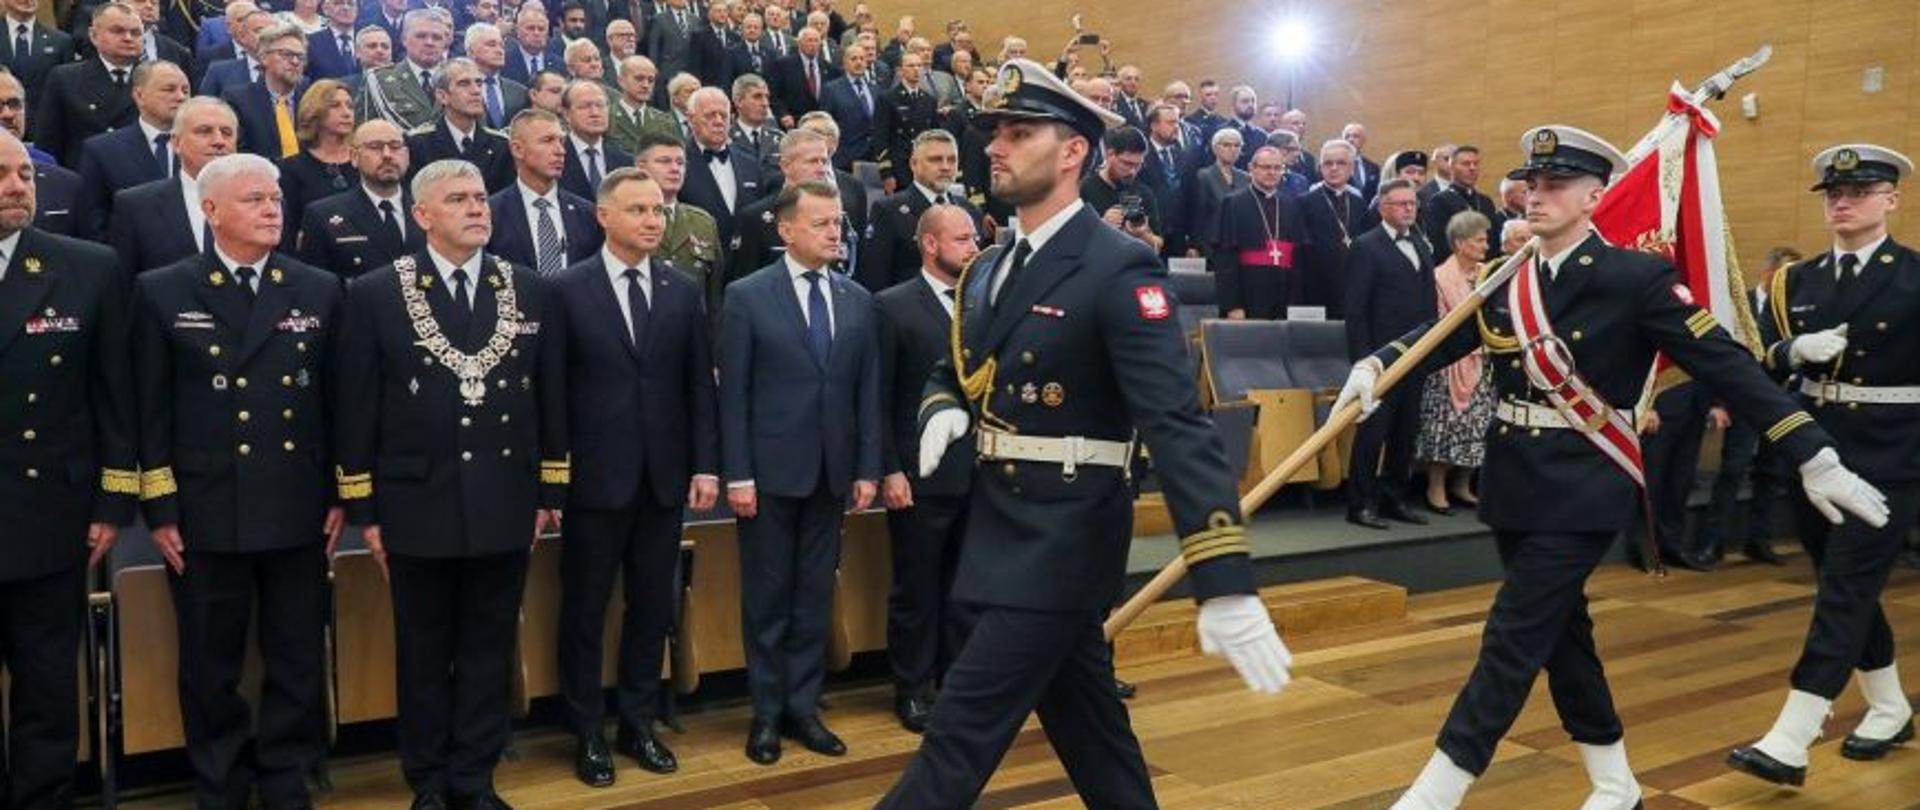 Poczet sztandarowy maszeruje przed zaproszonymi gośćmi wojskowymi osobami cywilnymi. 